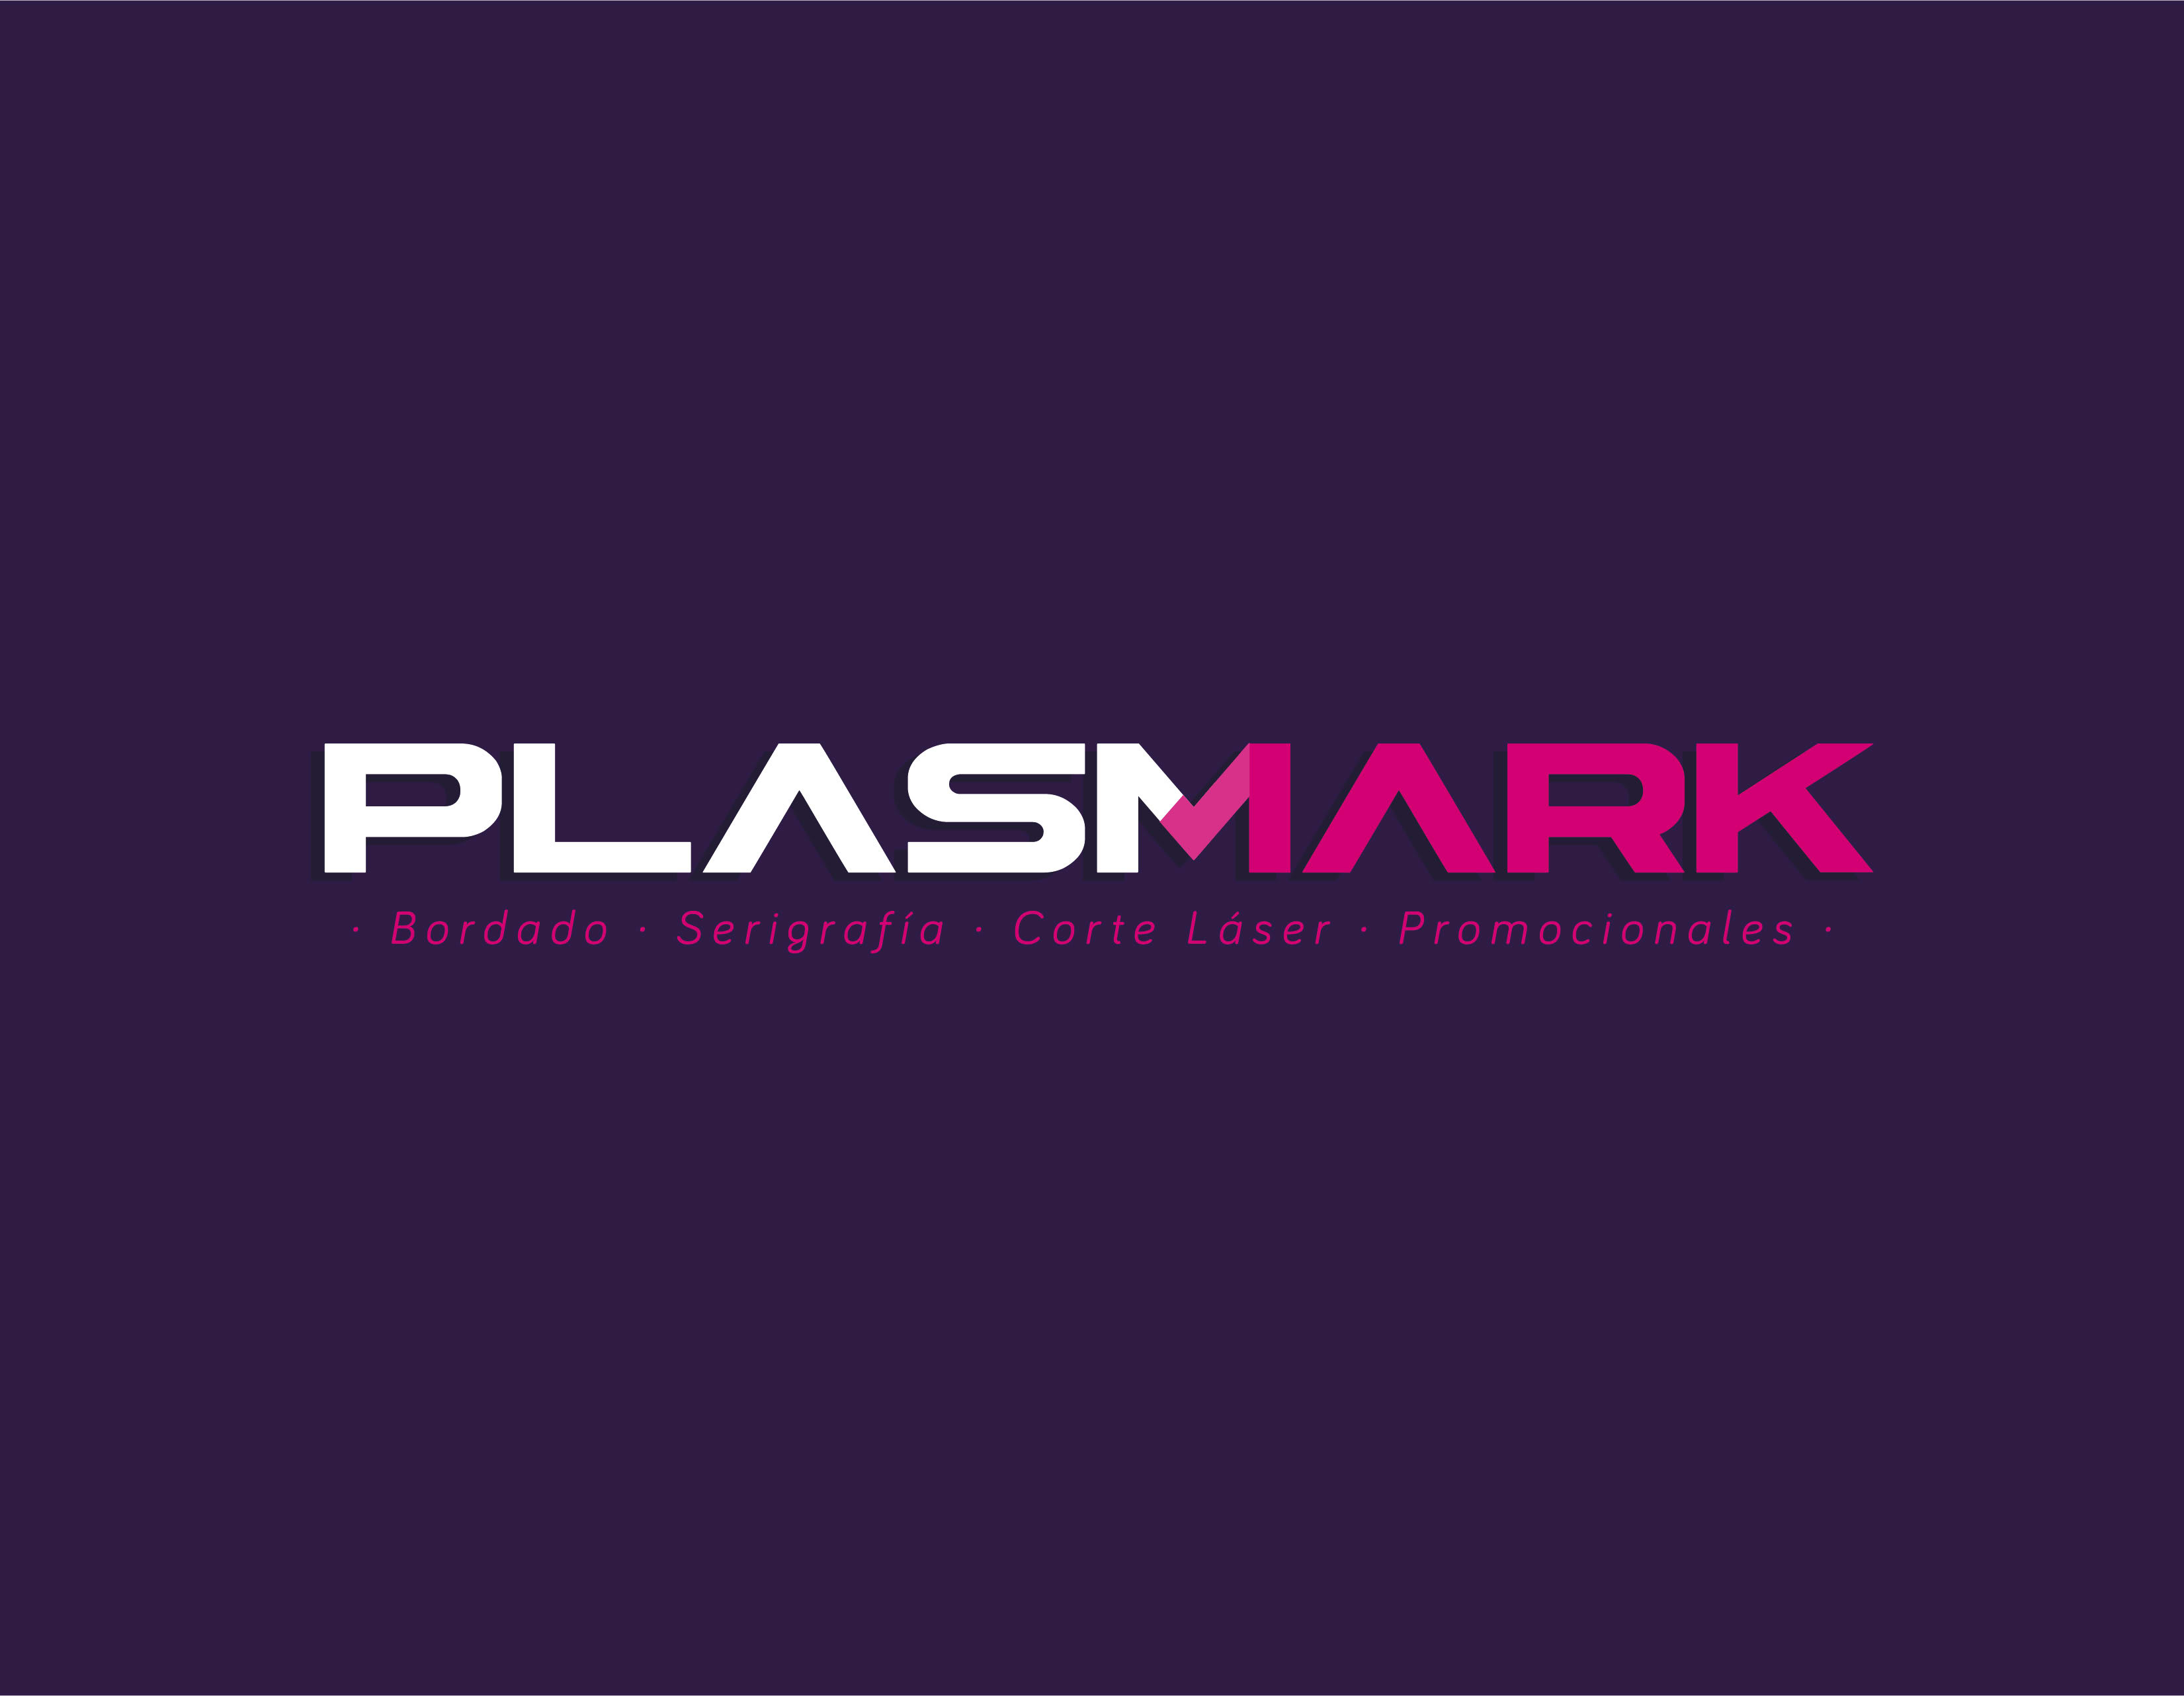 Plasmark